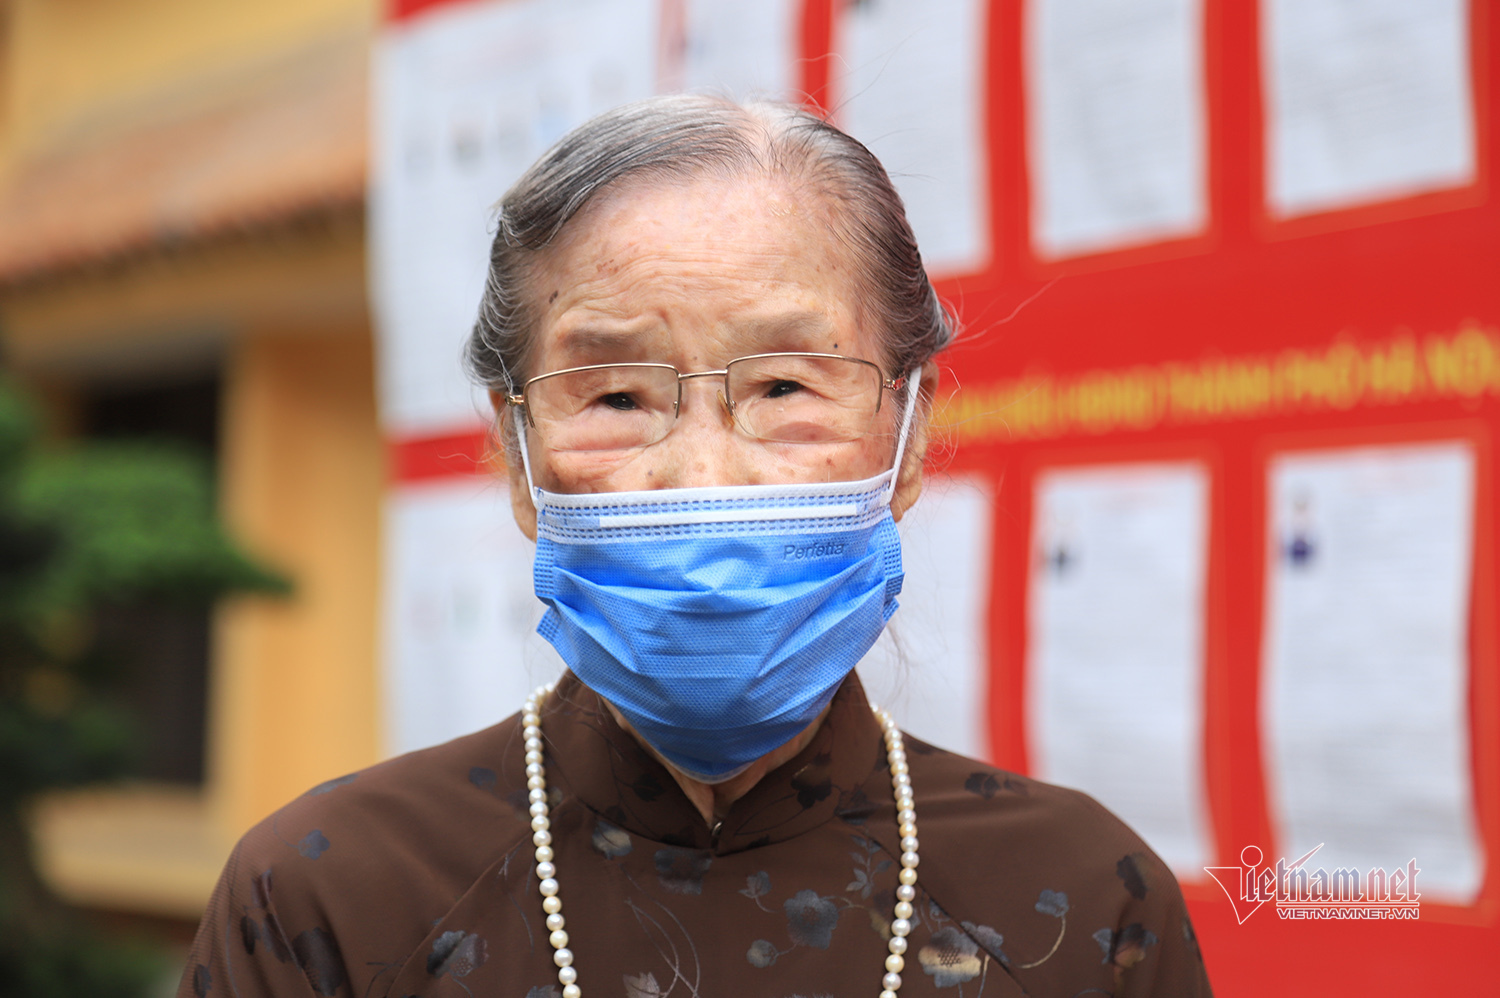 Phút giây xúc động cụ bà 96 tuổi cùng 4 thế hệ con cháu đi bầu cử ở Hà Nội